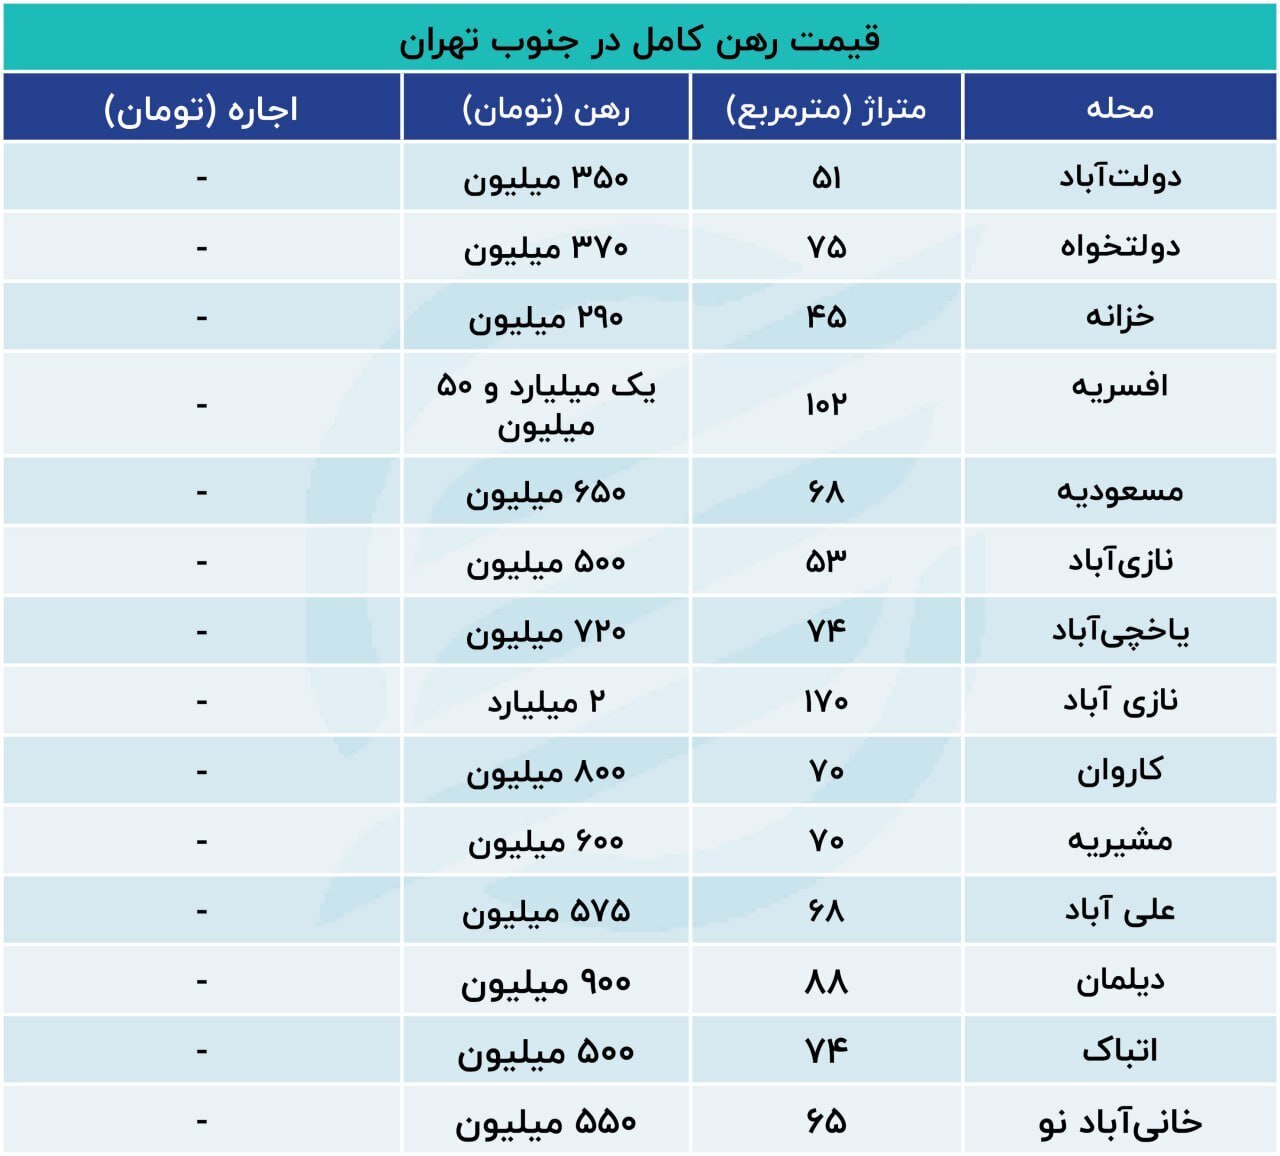 قیمت اجاره مسکن در جنوب تهران + جدول